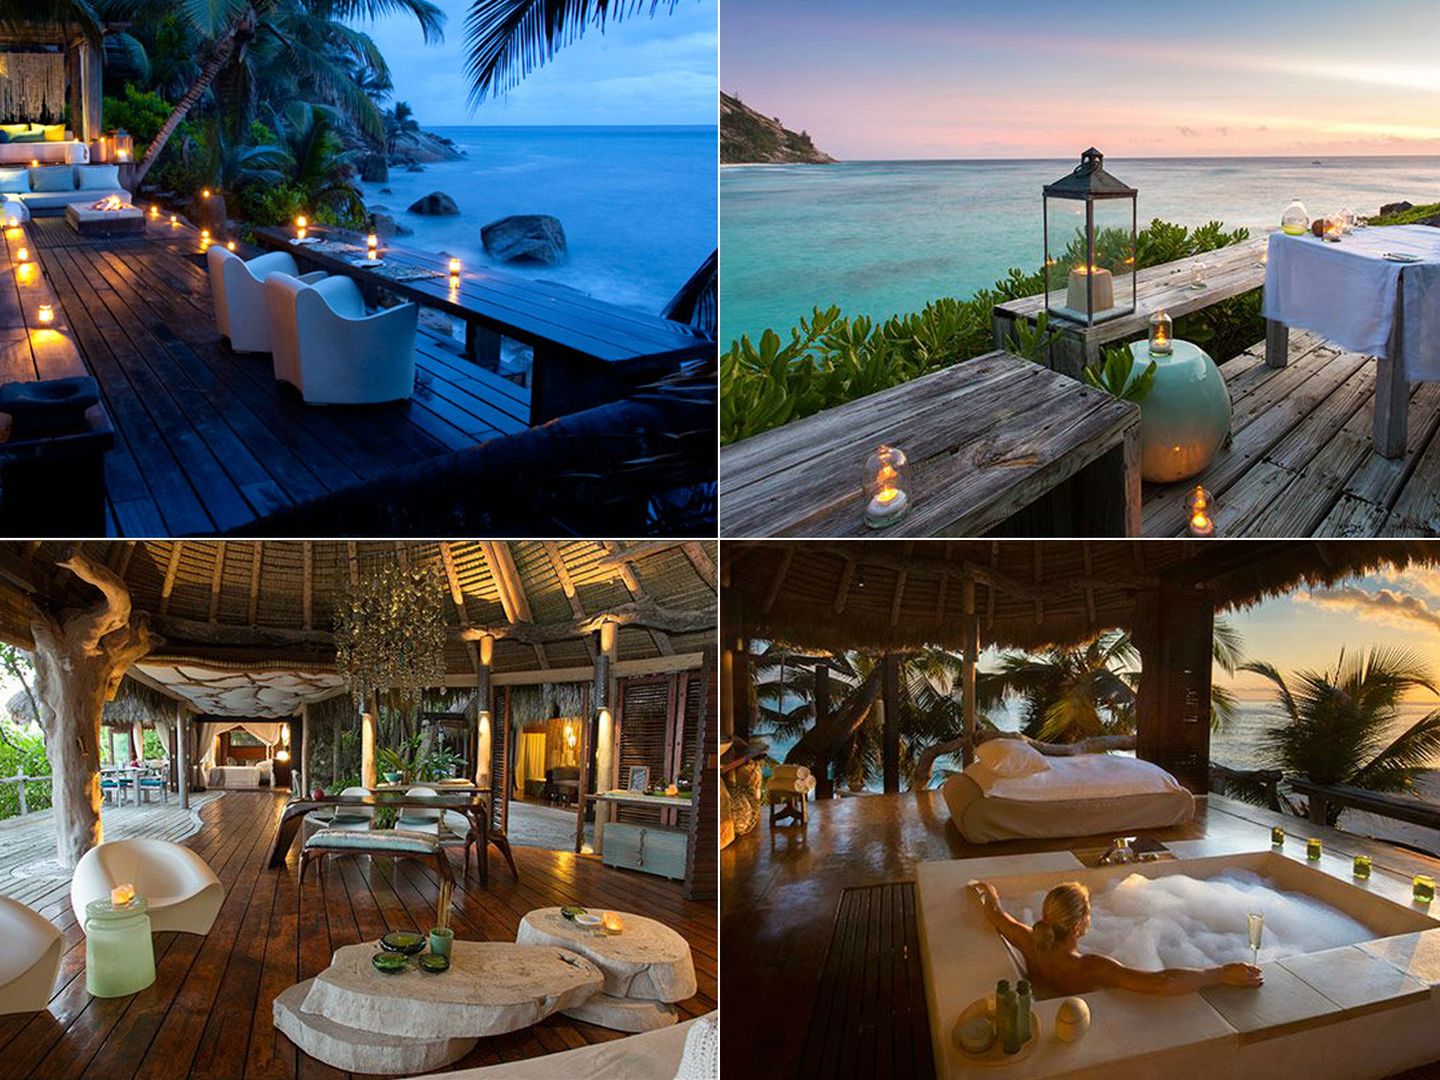 Imágenes proporcionadas por el hotel North Island Seychelles